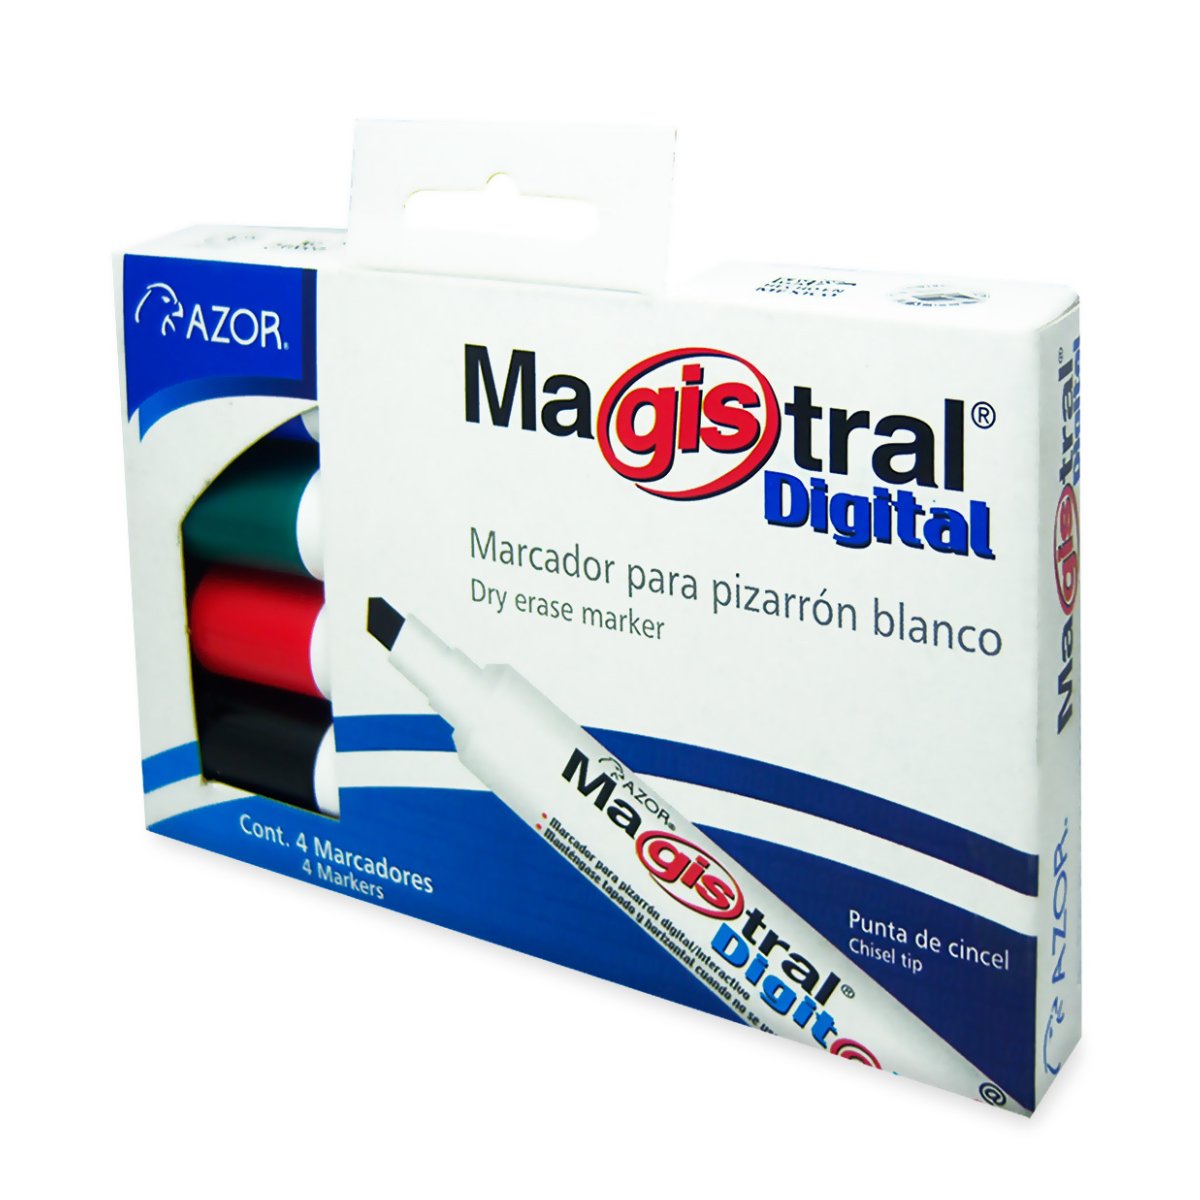 Marcadores Azor para Pizarrón Blanco 6mm Magistral Digital 4 Piezas